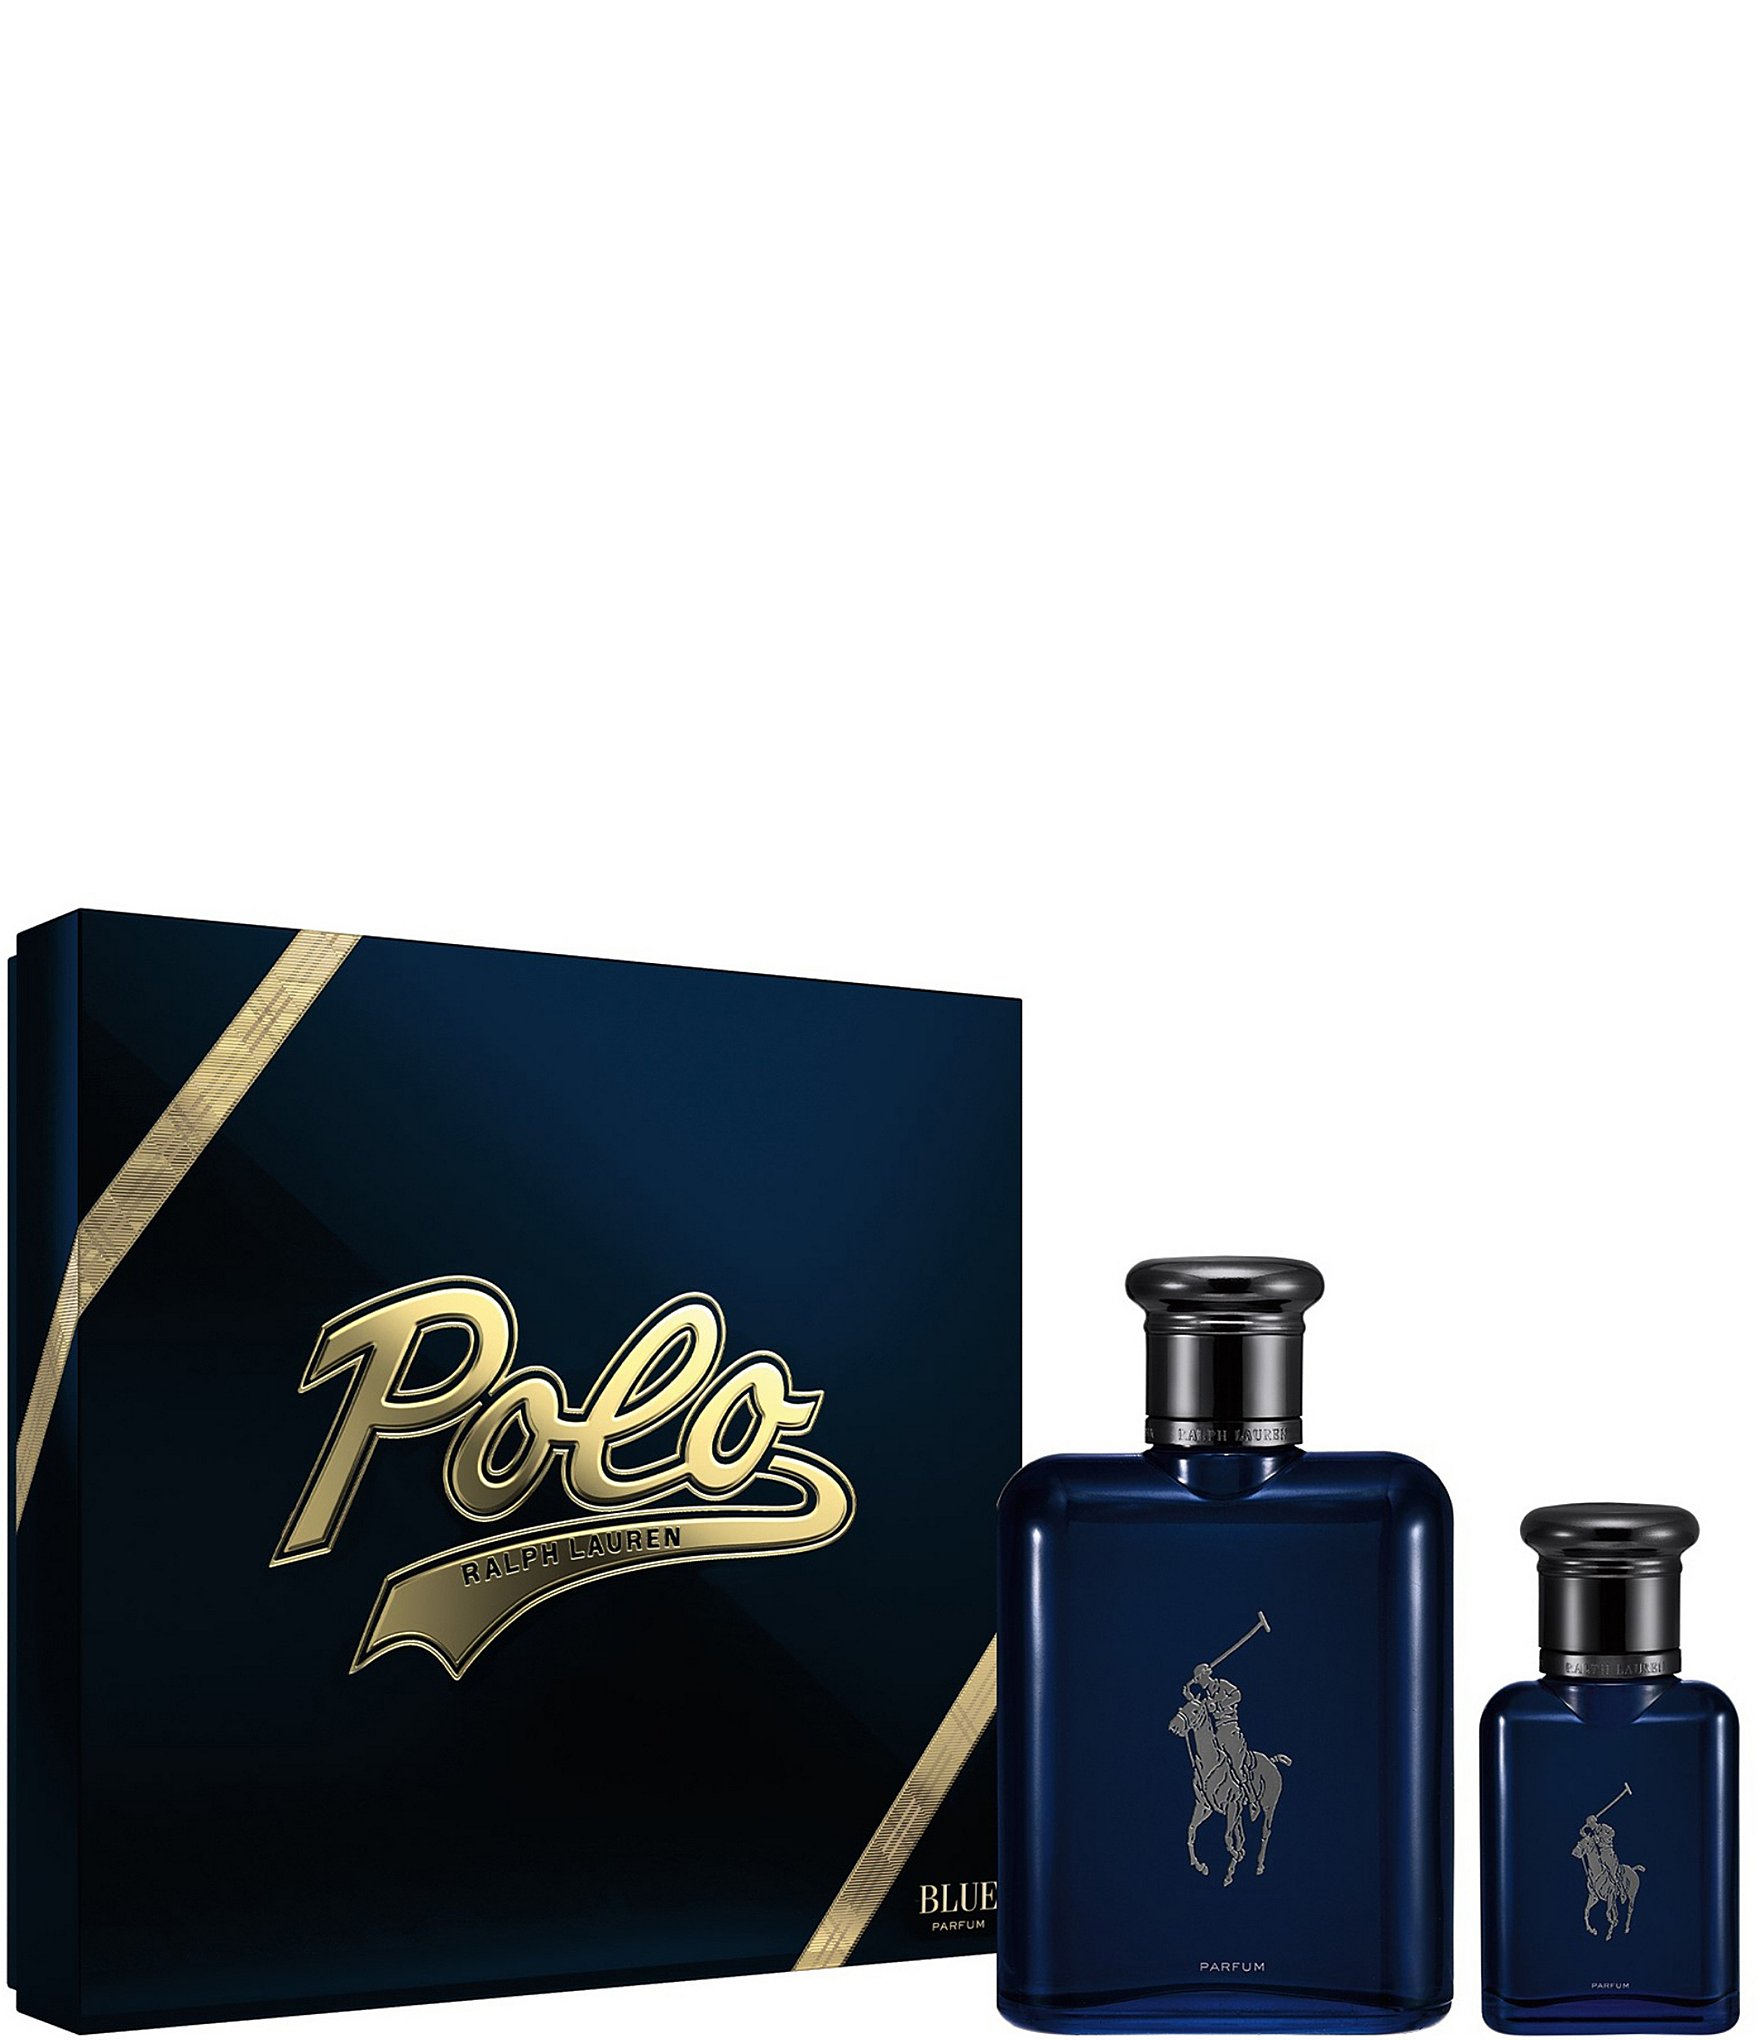 Polo Blue EDT for Men, Ralph Lauren